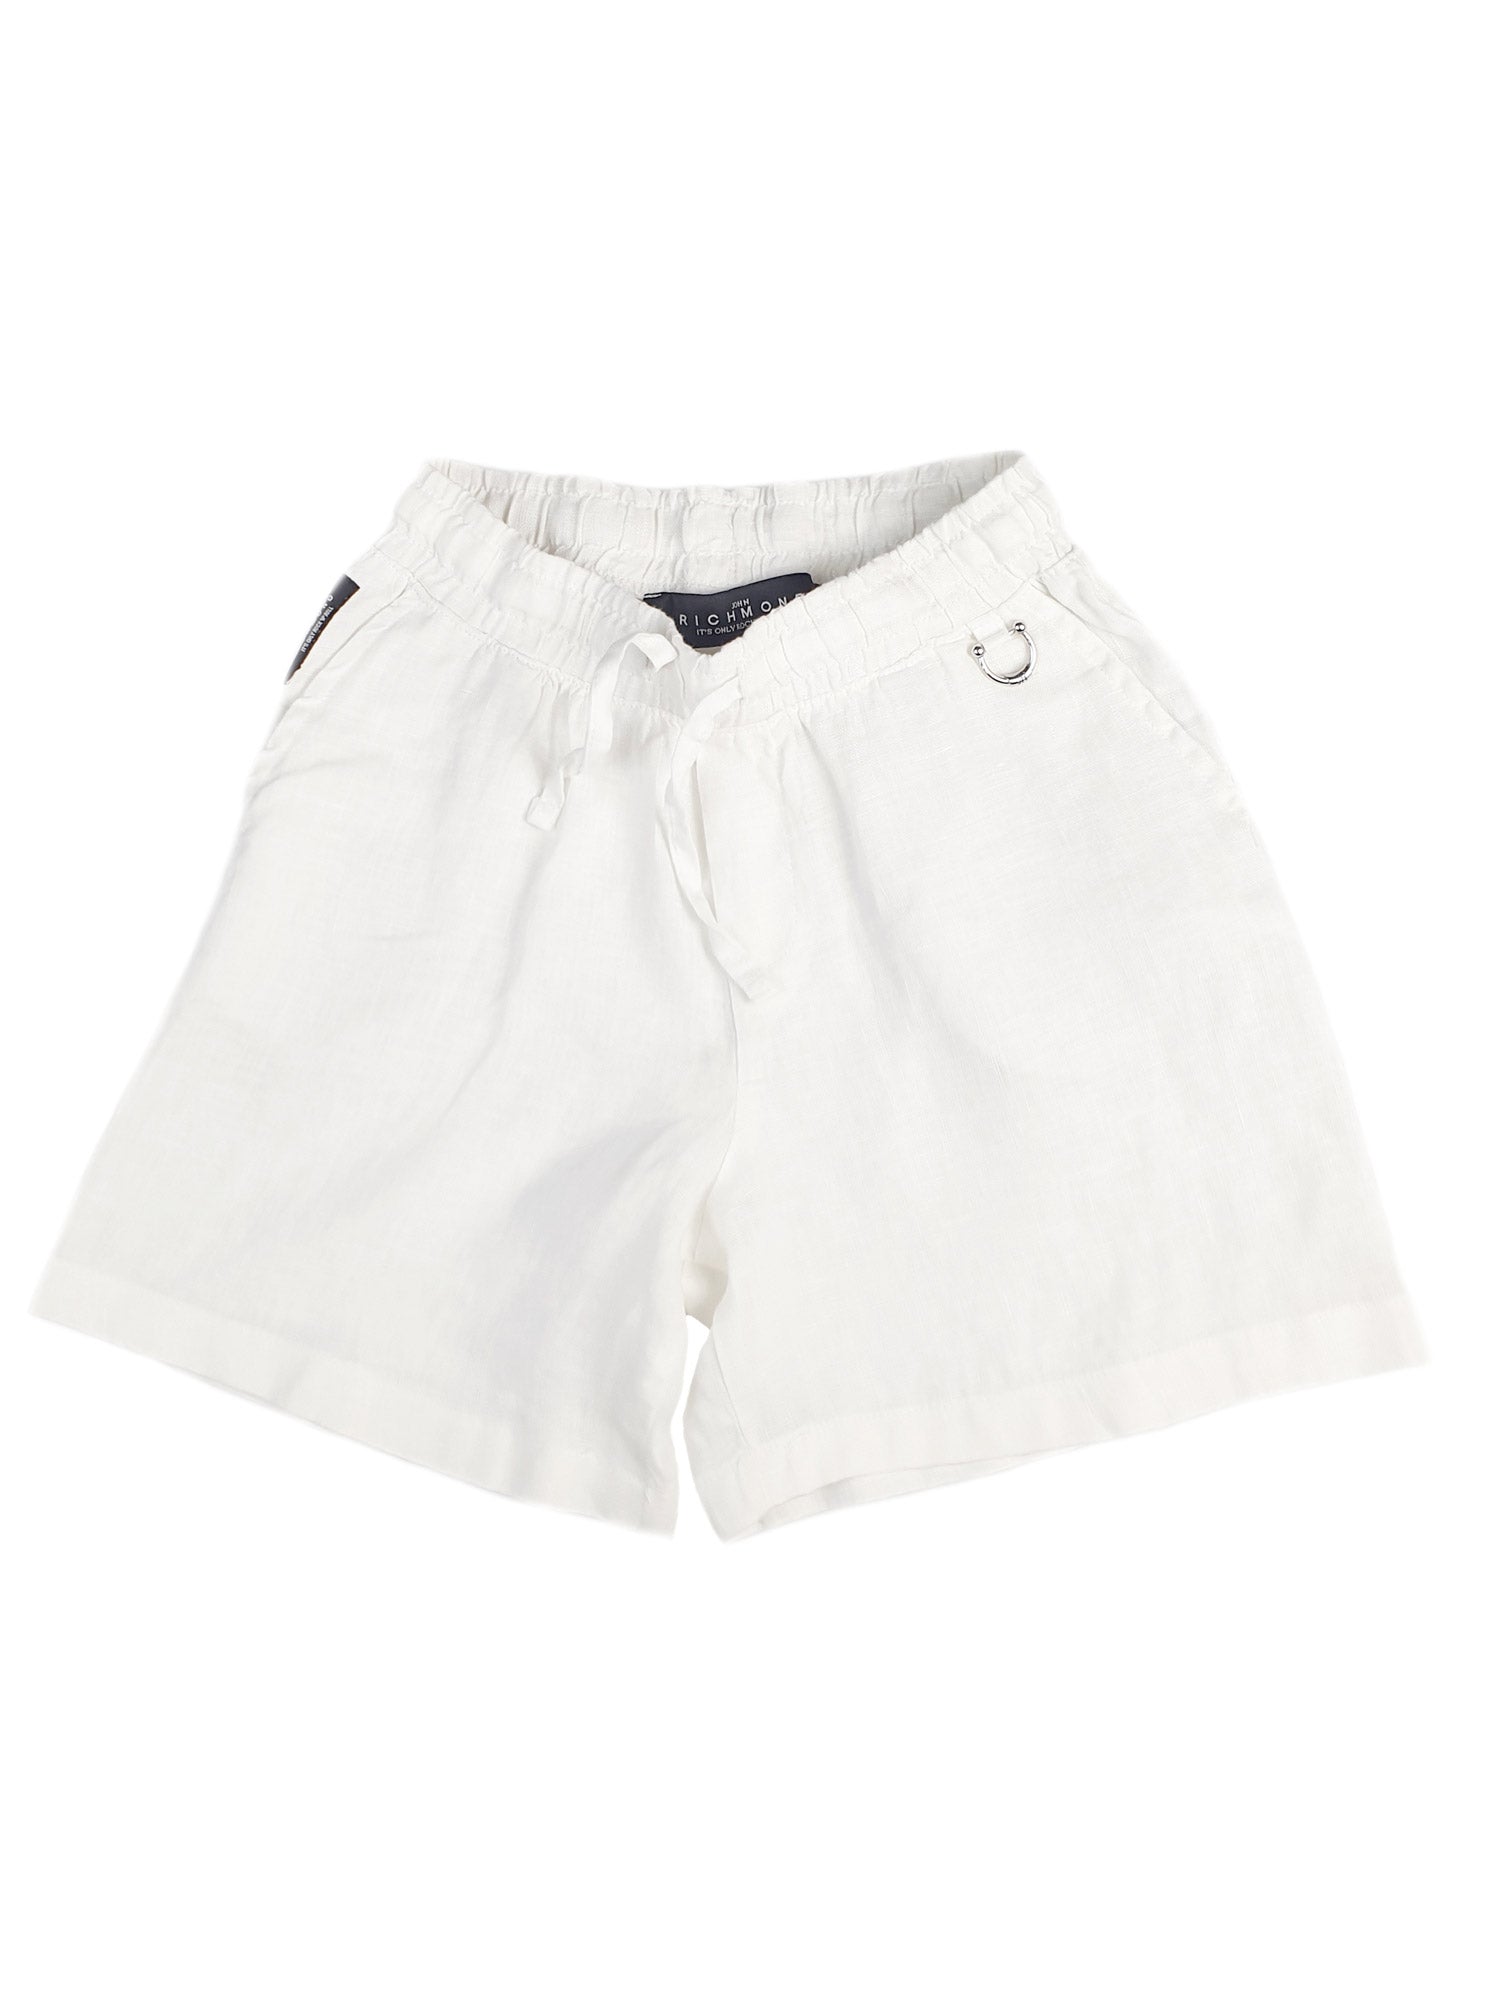 JR-Boy's Set-Linen Shirt & Shorts